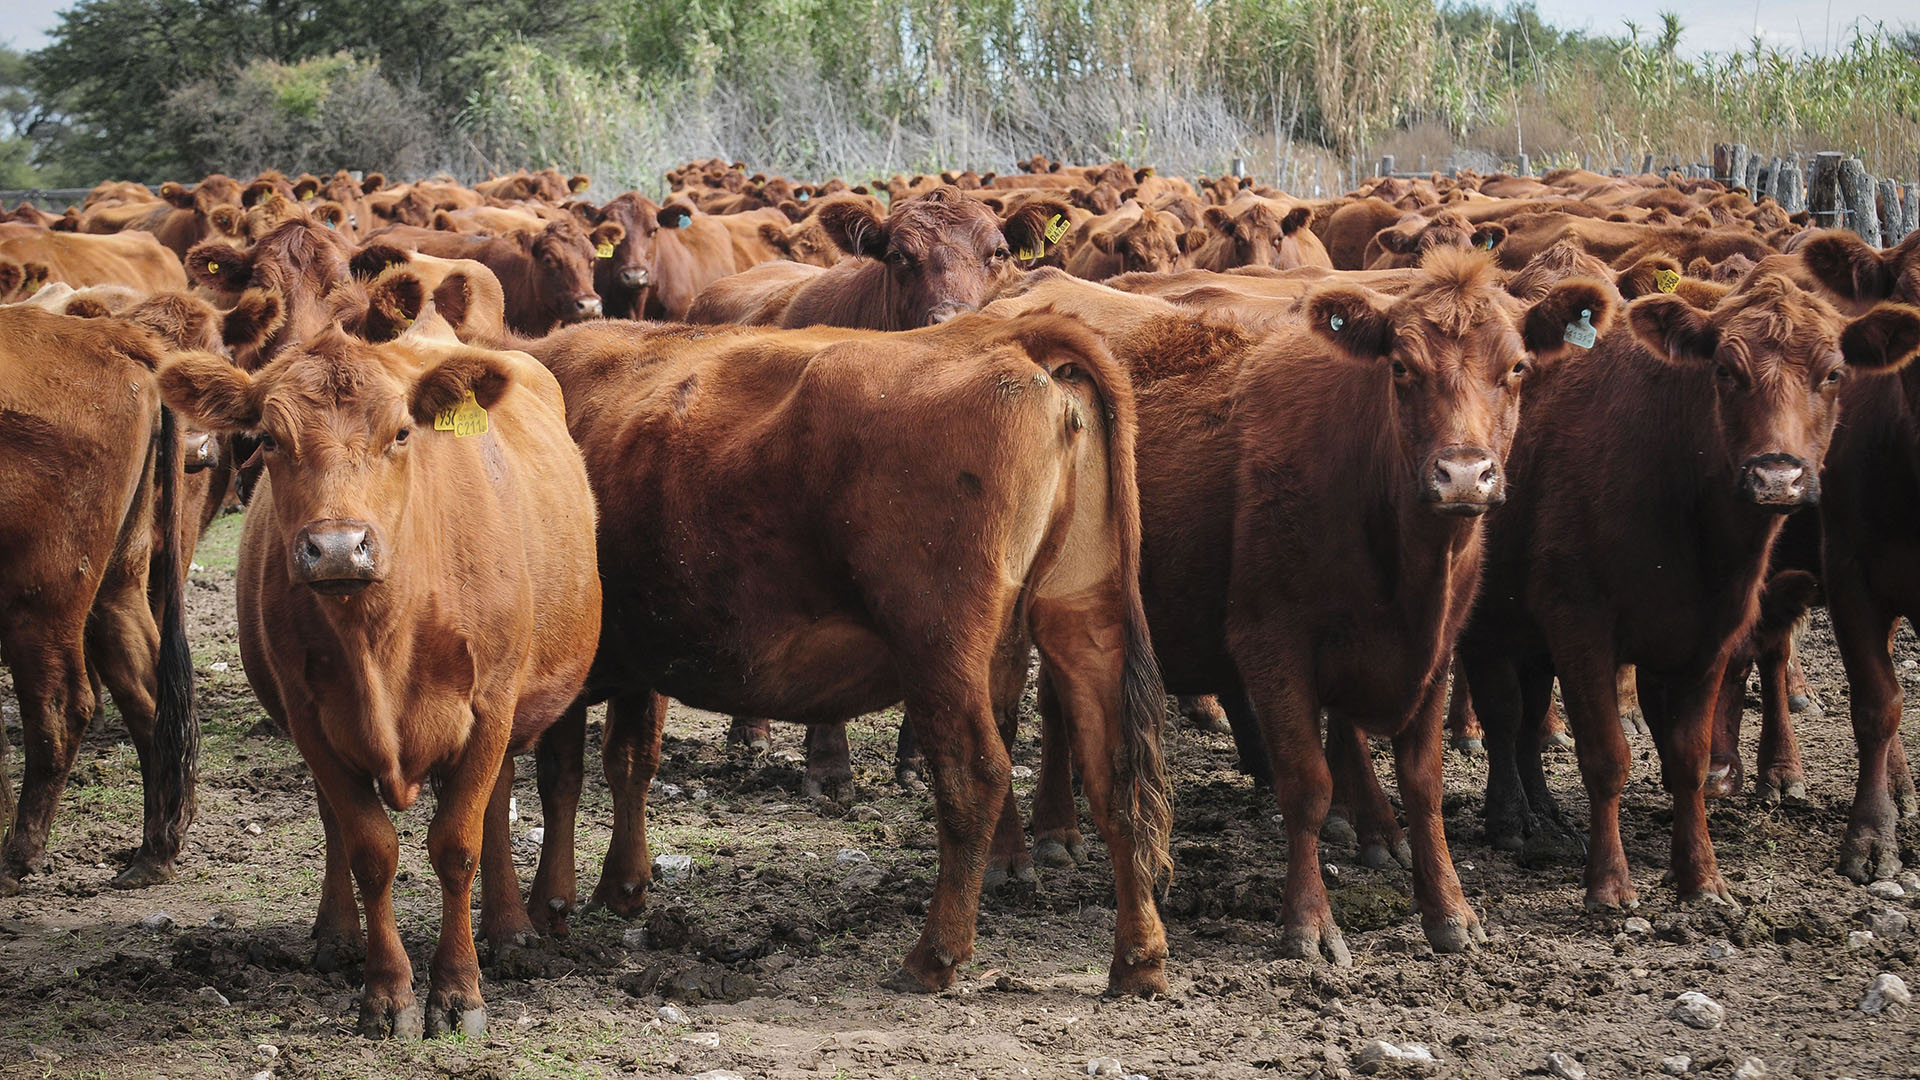 “Roban la carne para comerla”: el drama del productor que ya hizo 70 denuncias por robo de ganado